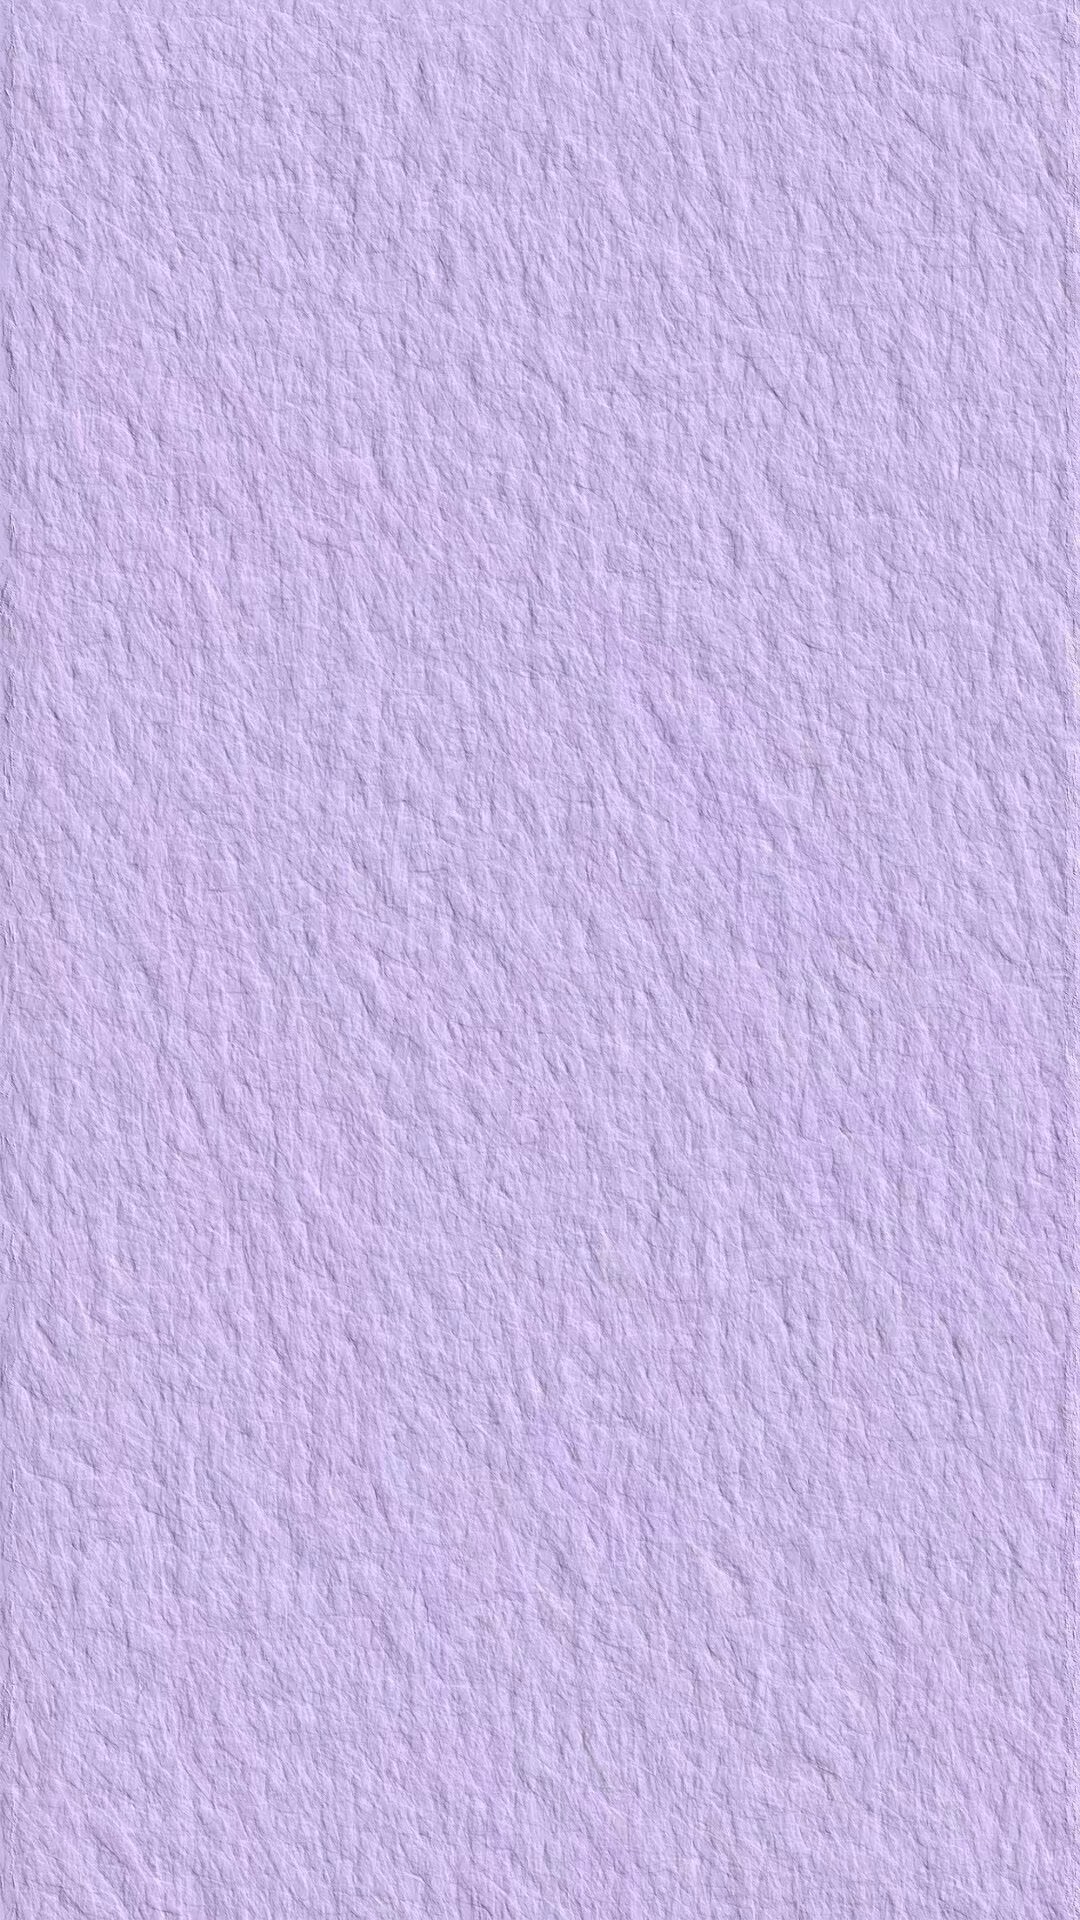 聊天背景纯色 淡紫色图片